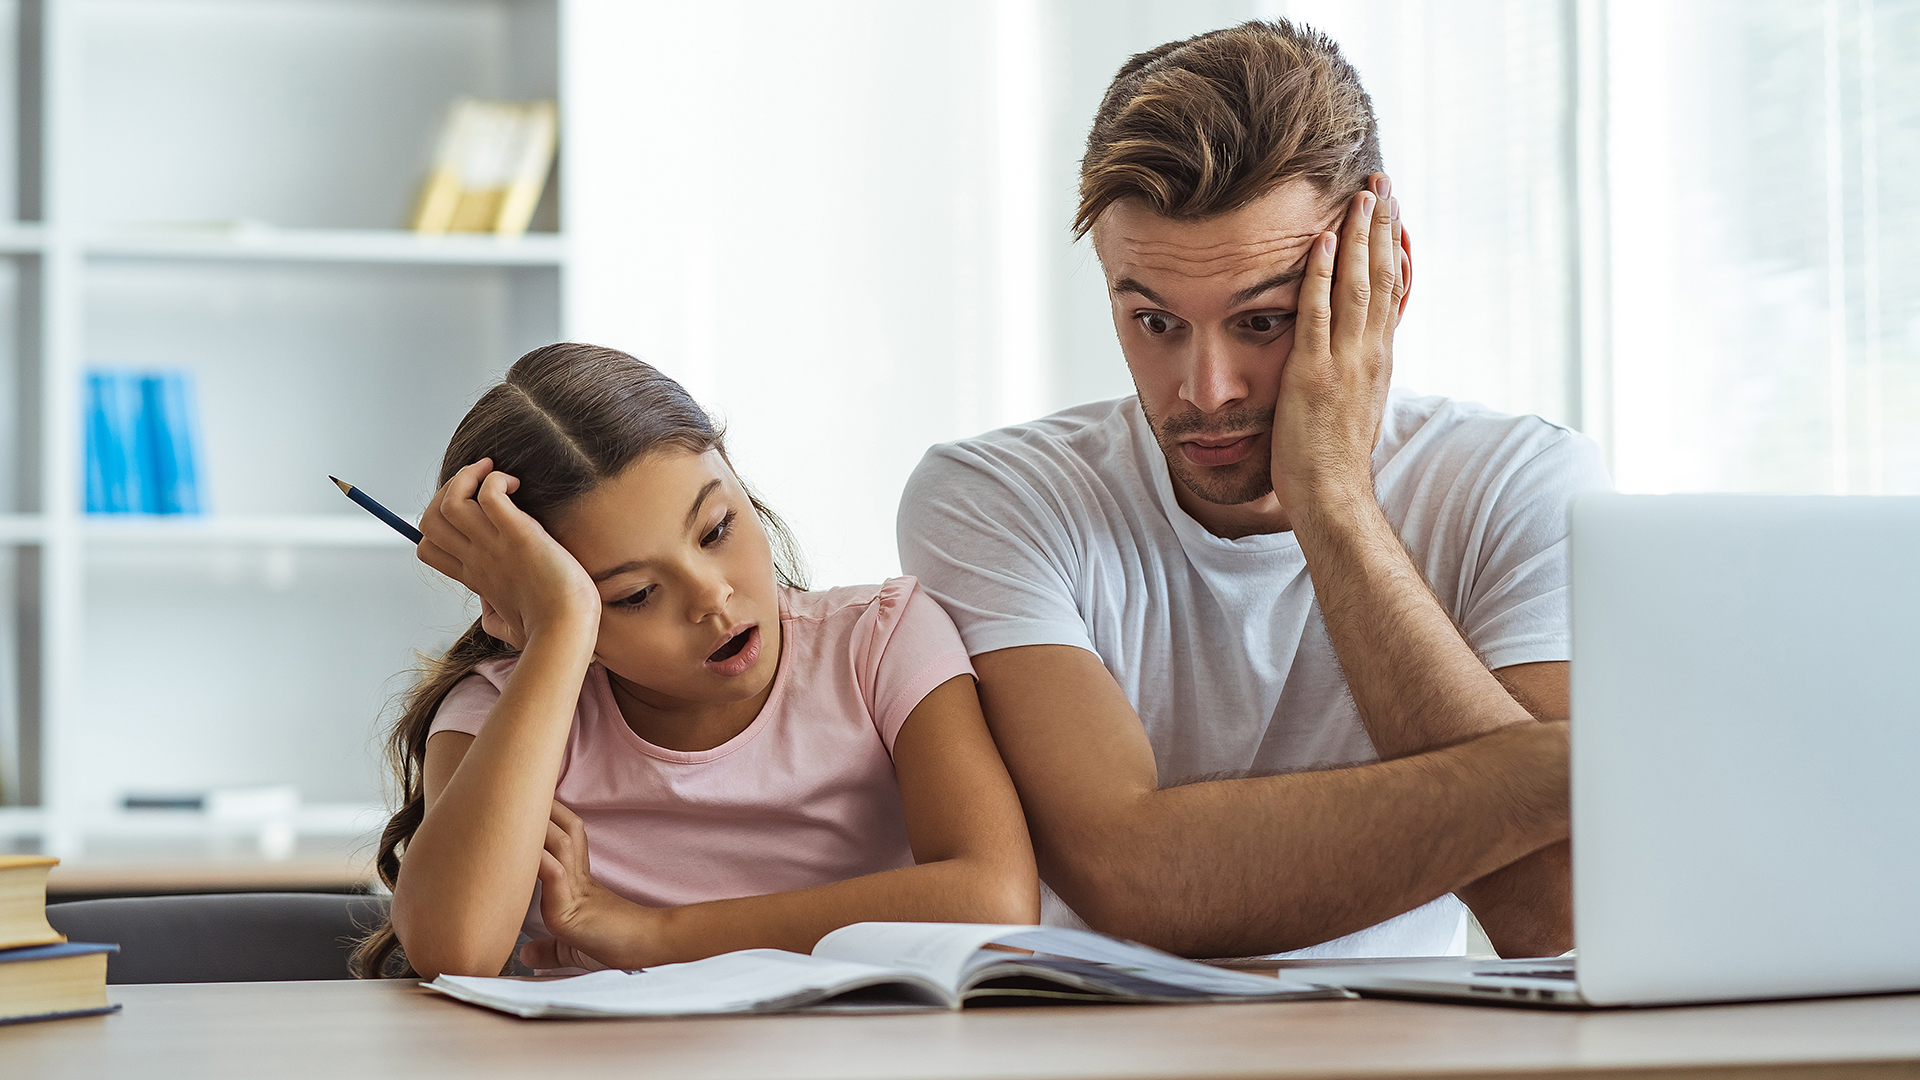 Vater versucht seiner Tochter beim Lernen zu helfen, ist jedoch völlig überfordert. Online Elternberatung kann helfen!